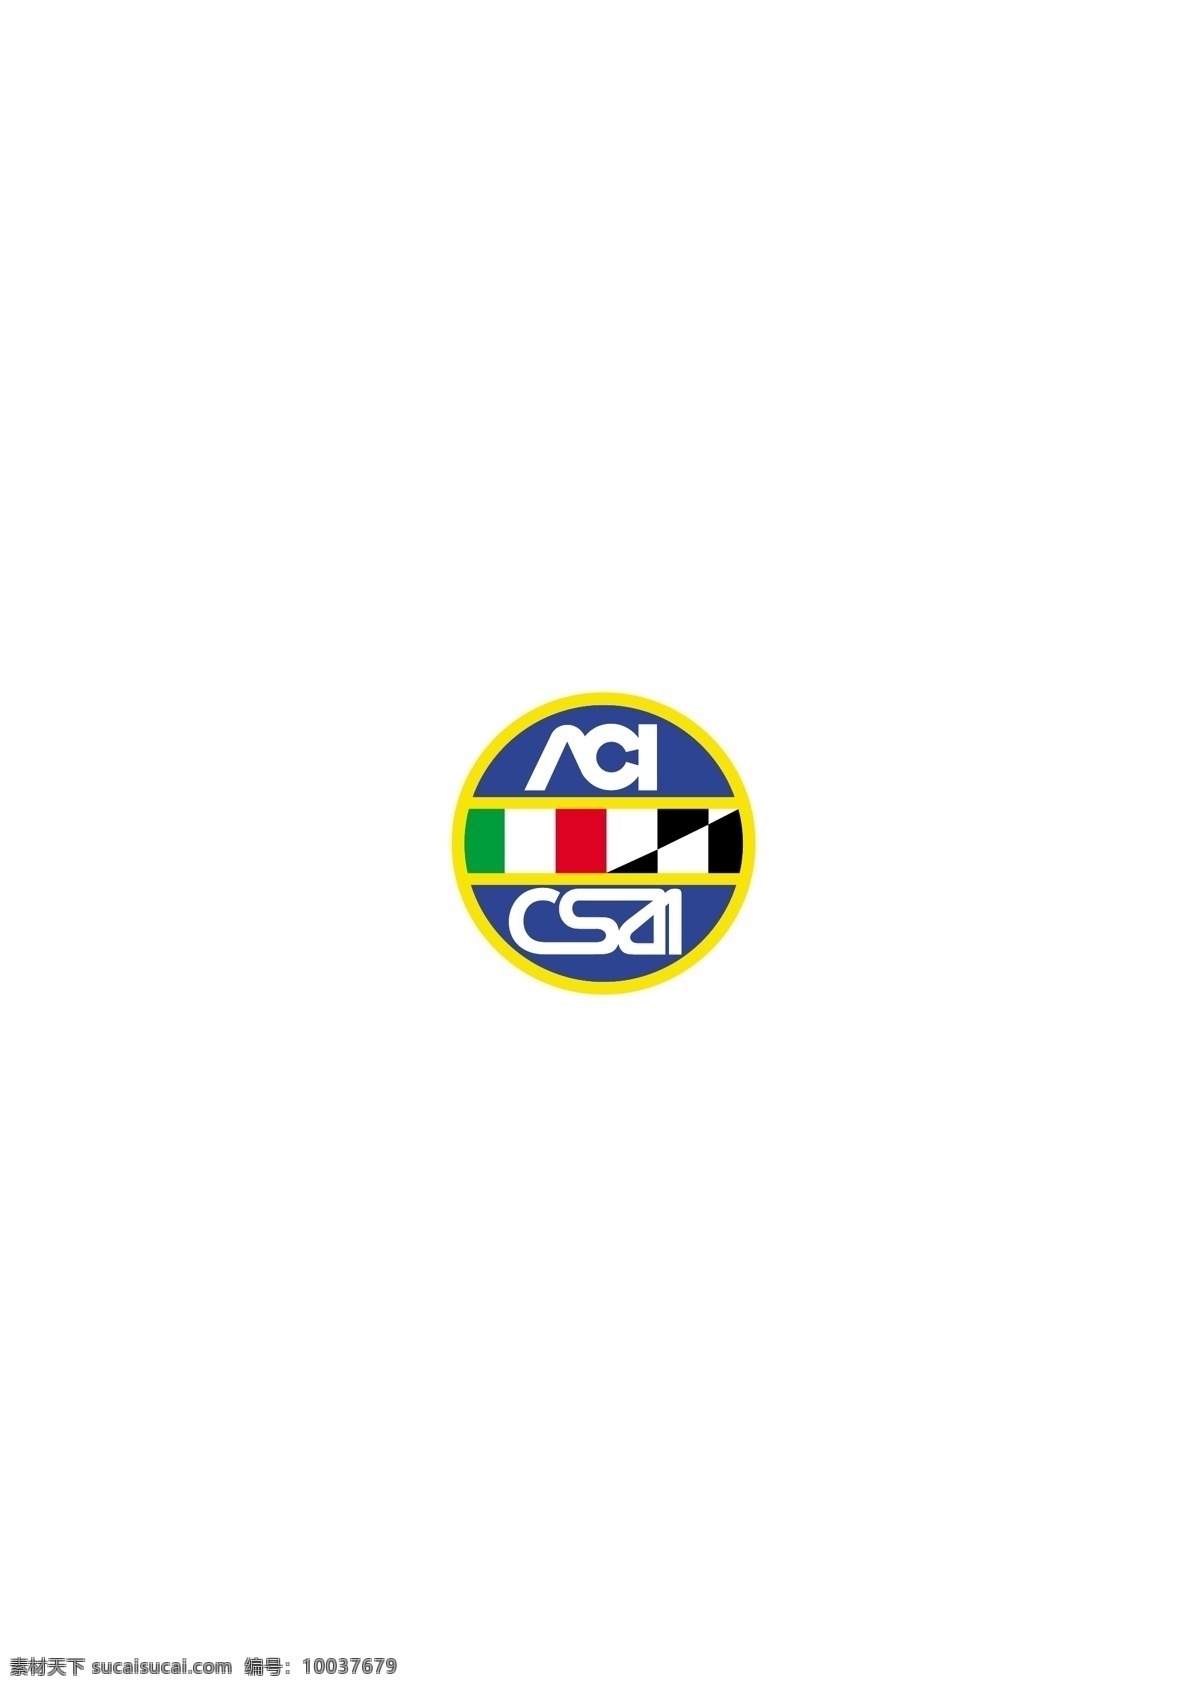 acicsai logo 设计欣赏 体育赛事 标志 标志设计 欣赏 矢量下载 网页矢量 商业矢量 logo大全 红色